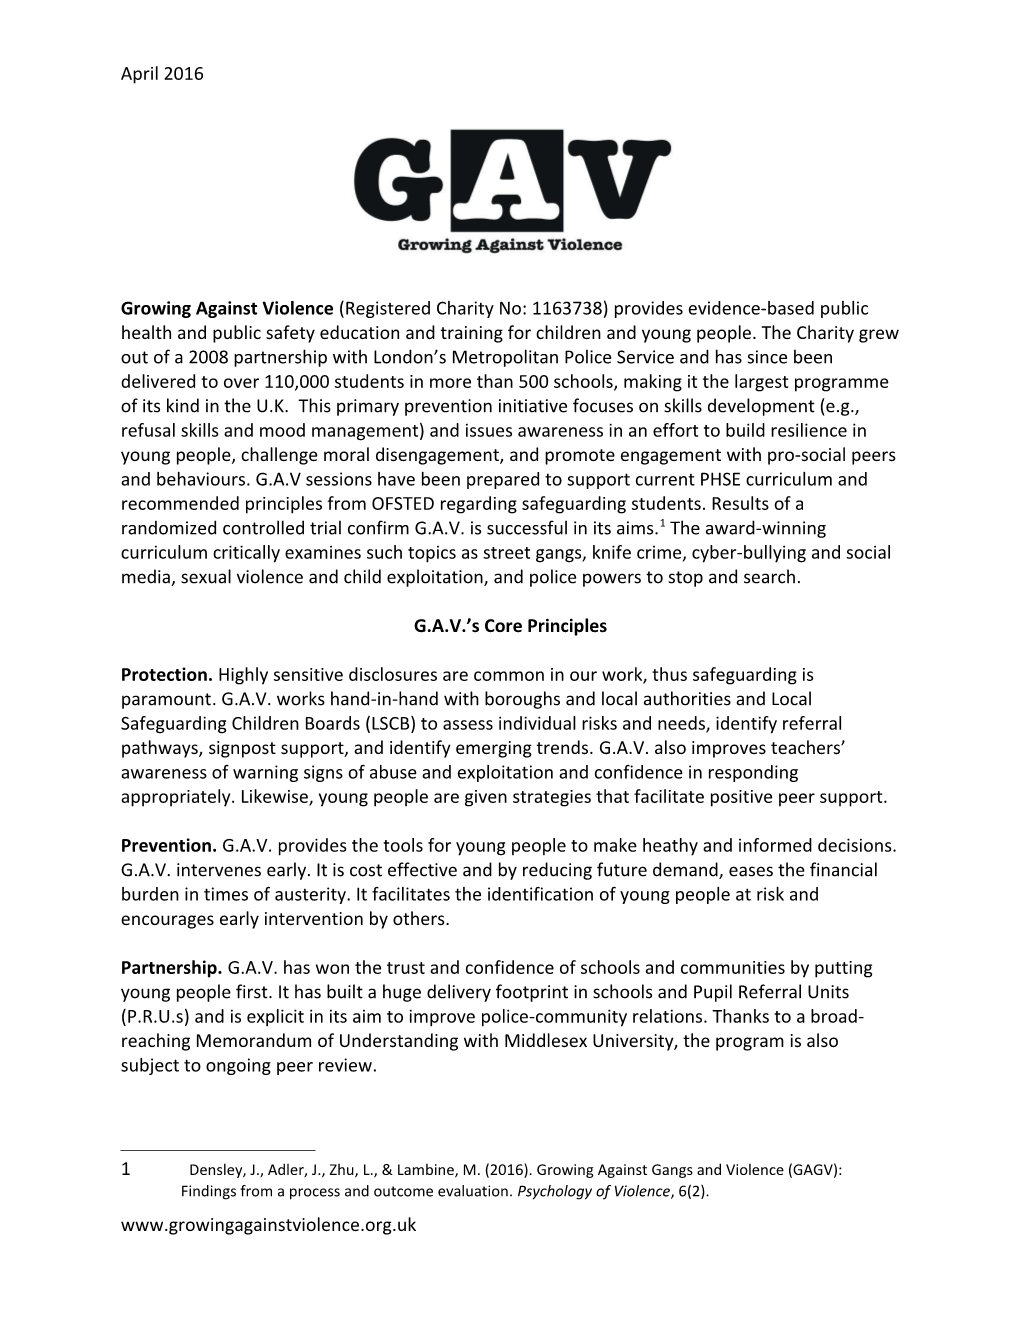 G.A.V. S Core Principles